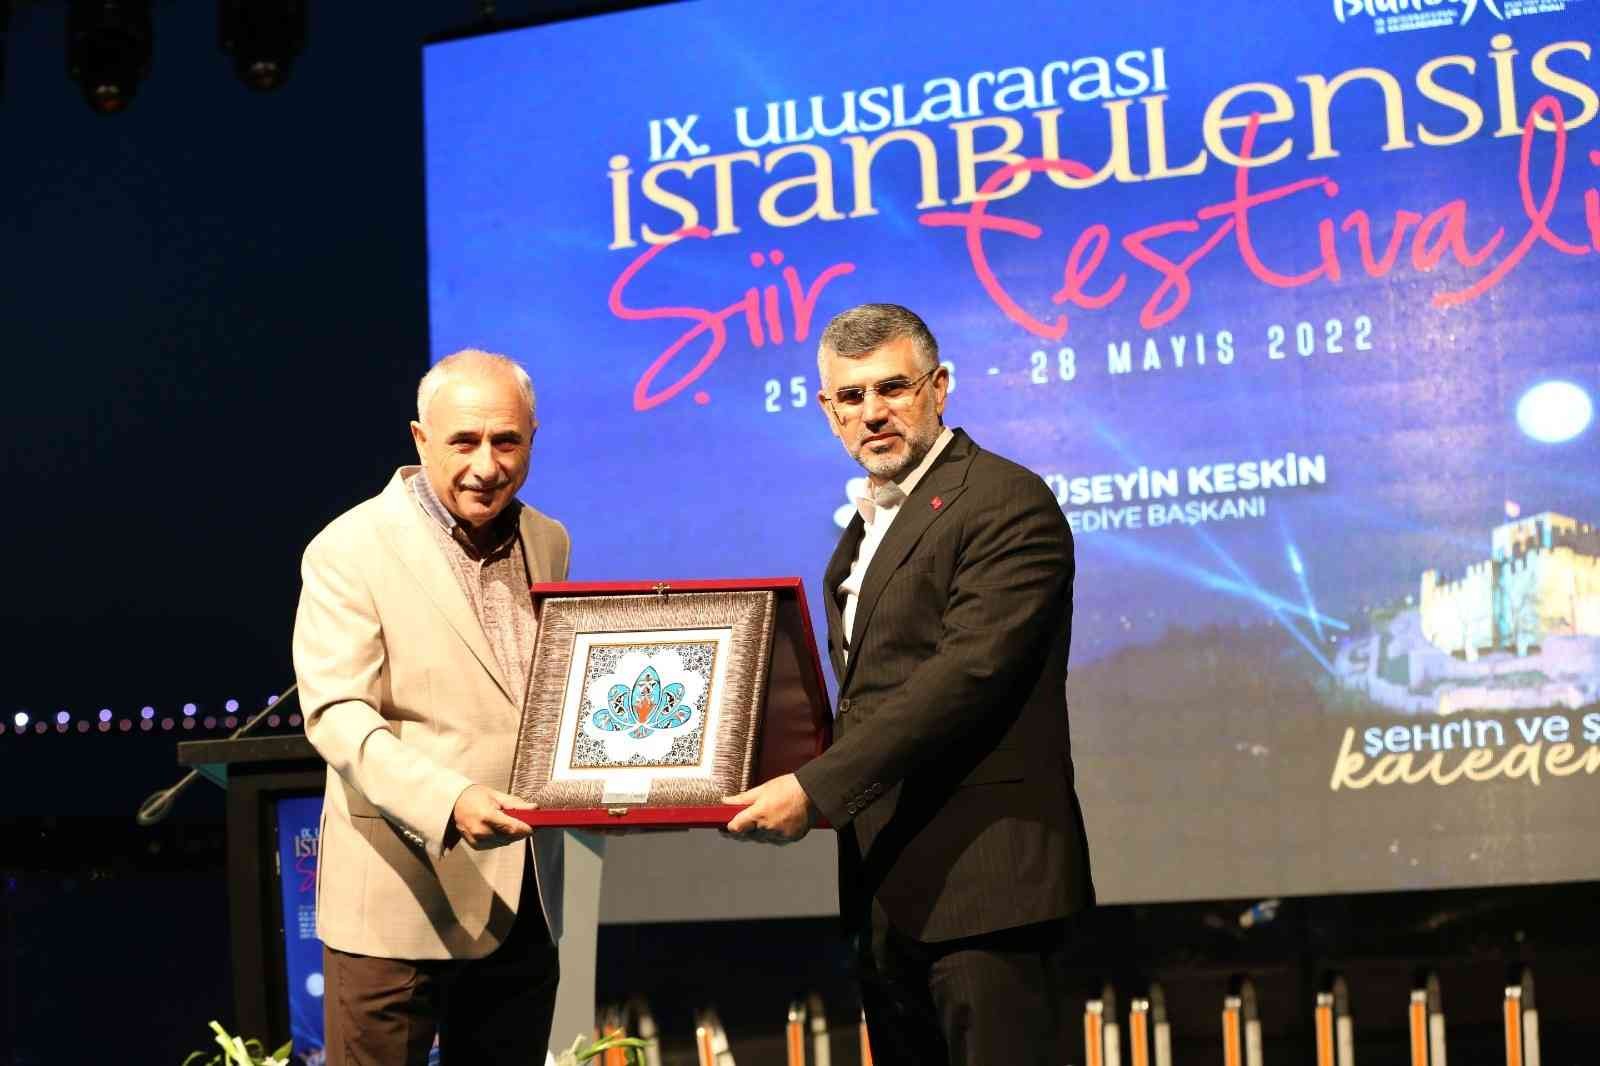 Sultanbeyli Belediyesi tarafından düzenlenen, kültür-sanat dünyasının yakından takip ettiği 9. Uluslararası İstanbulensis Şiir Festivali başladı ...